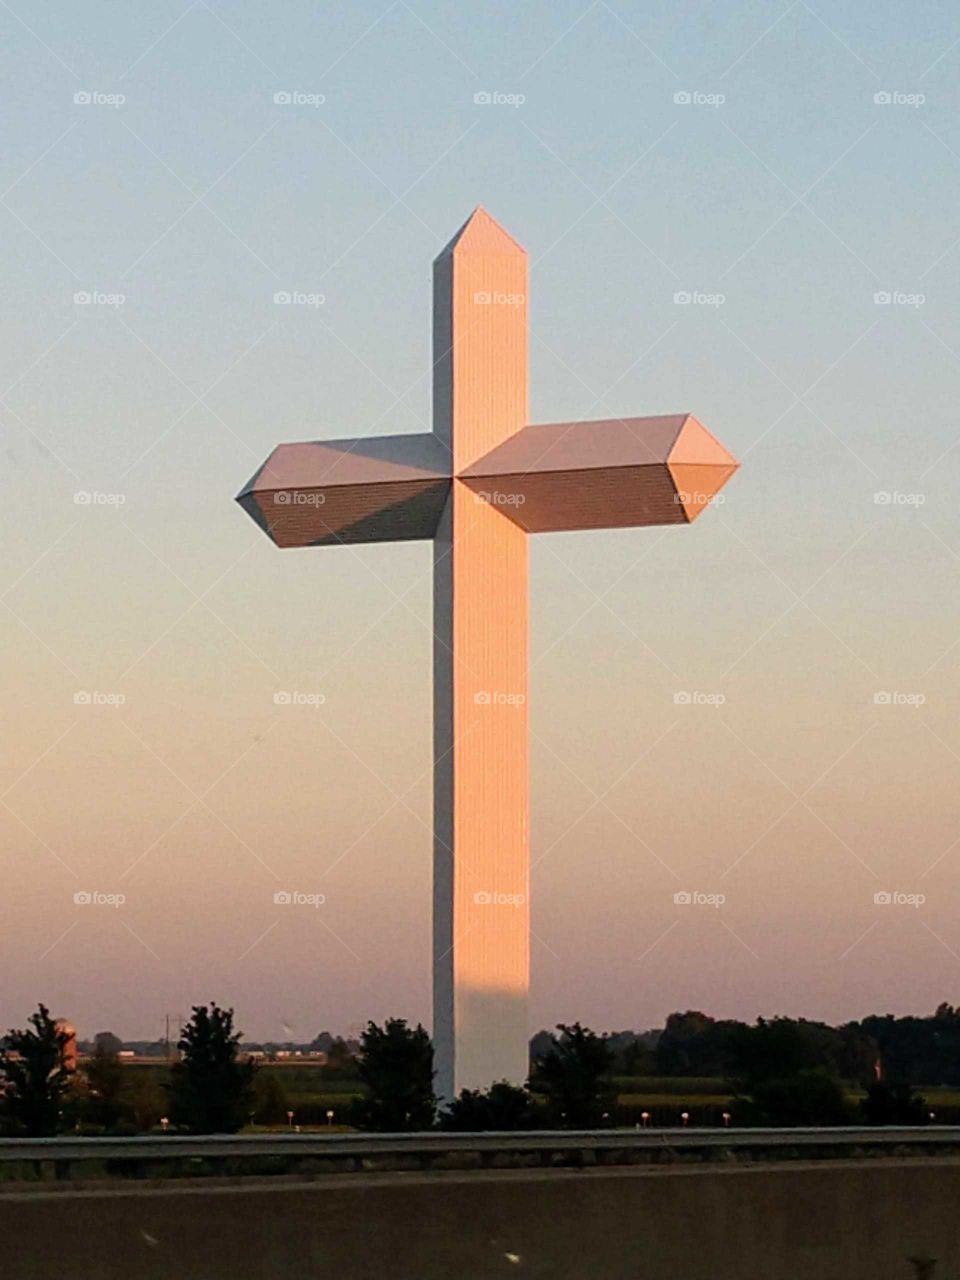 The Effingham Cross